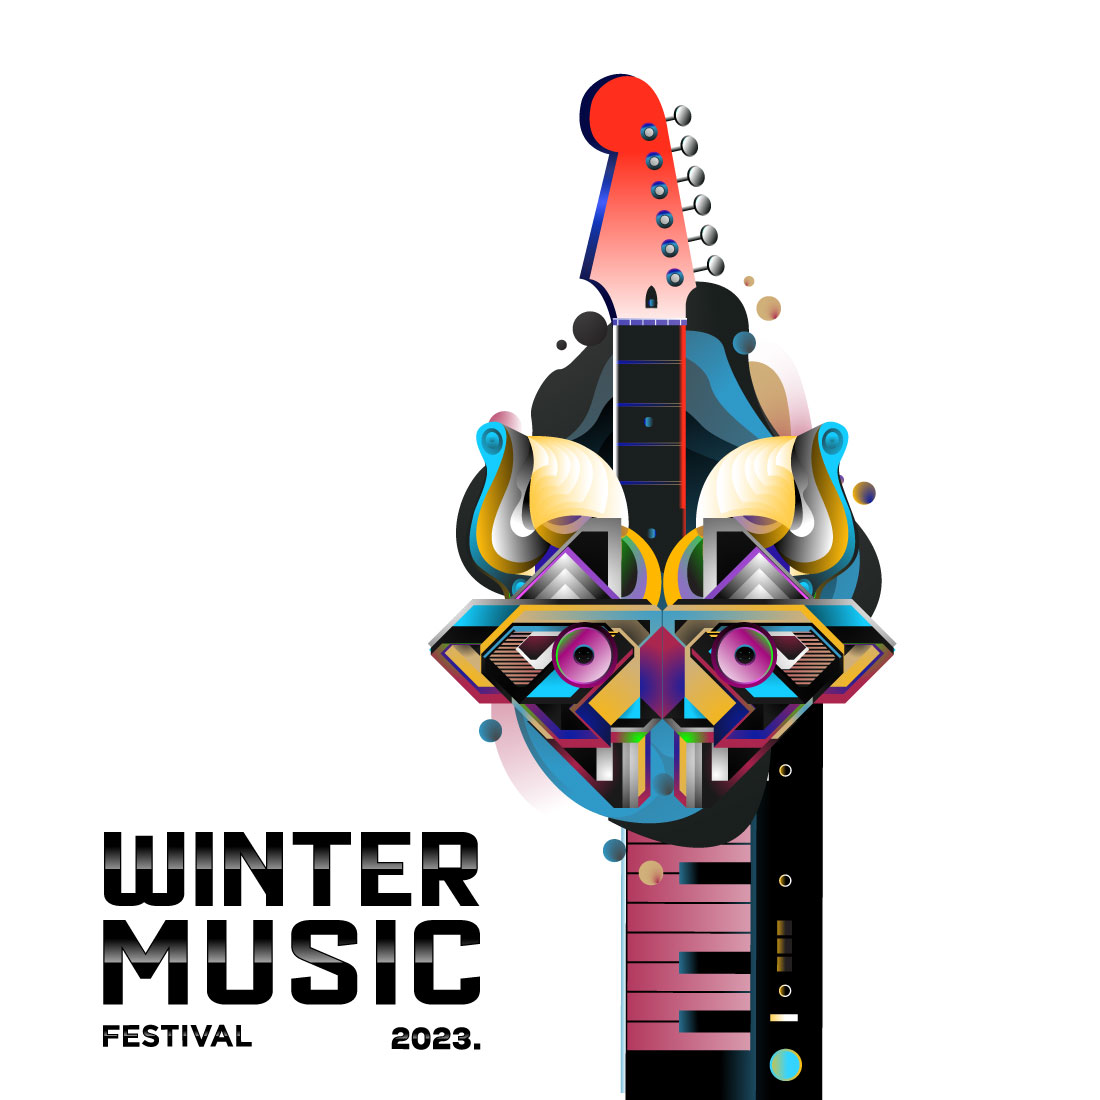 Winter Music Festival Flyer Poster Design cover image.